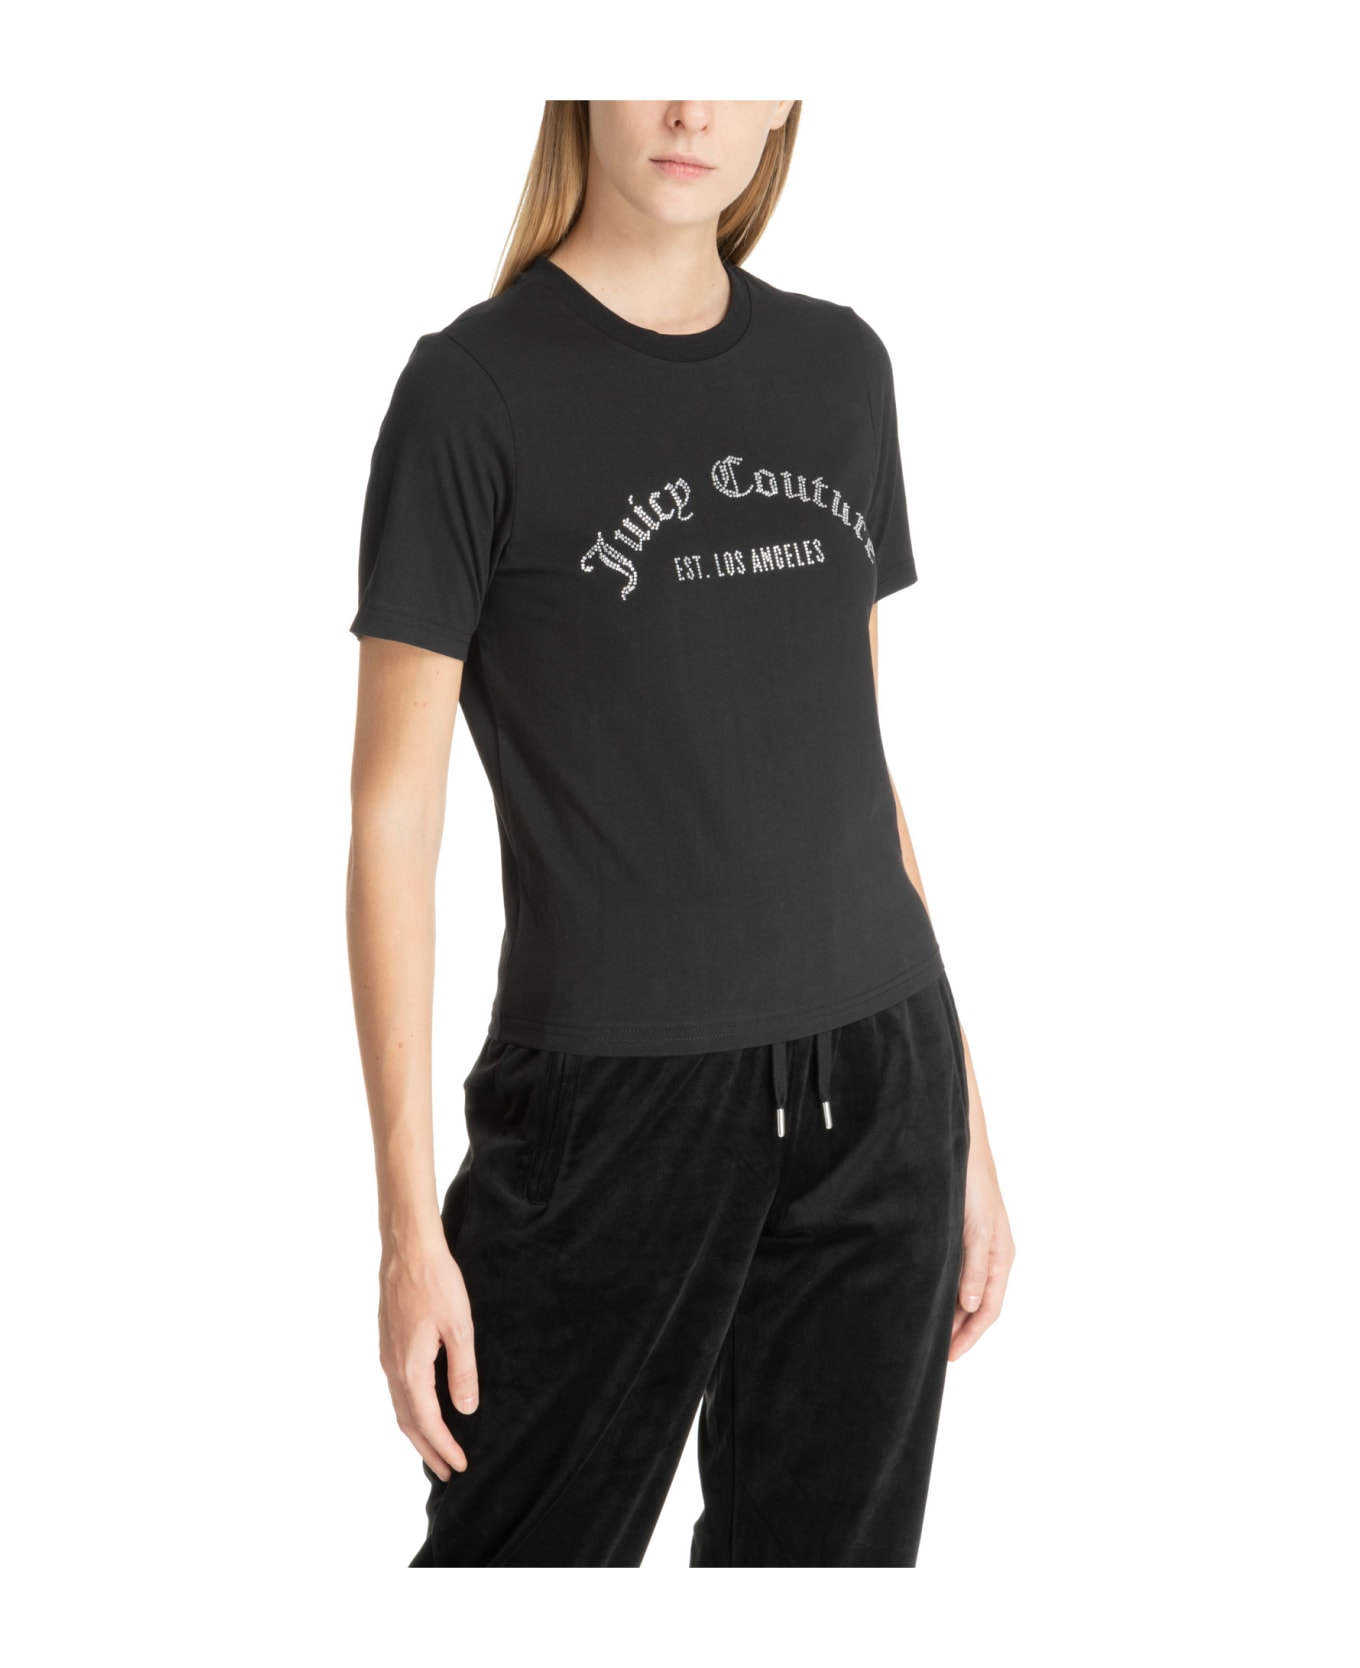 Juicy Couture Noah Cotton T-shirt - Black